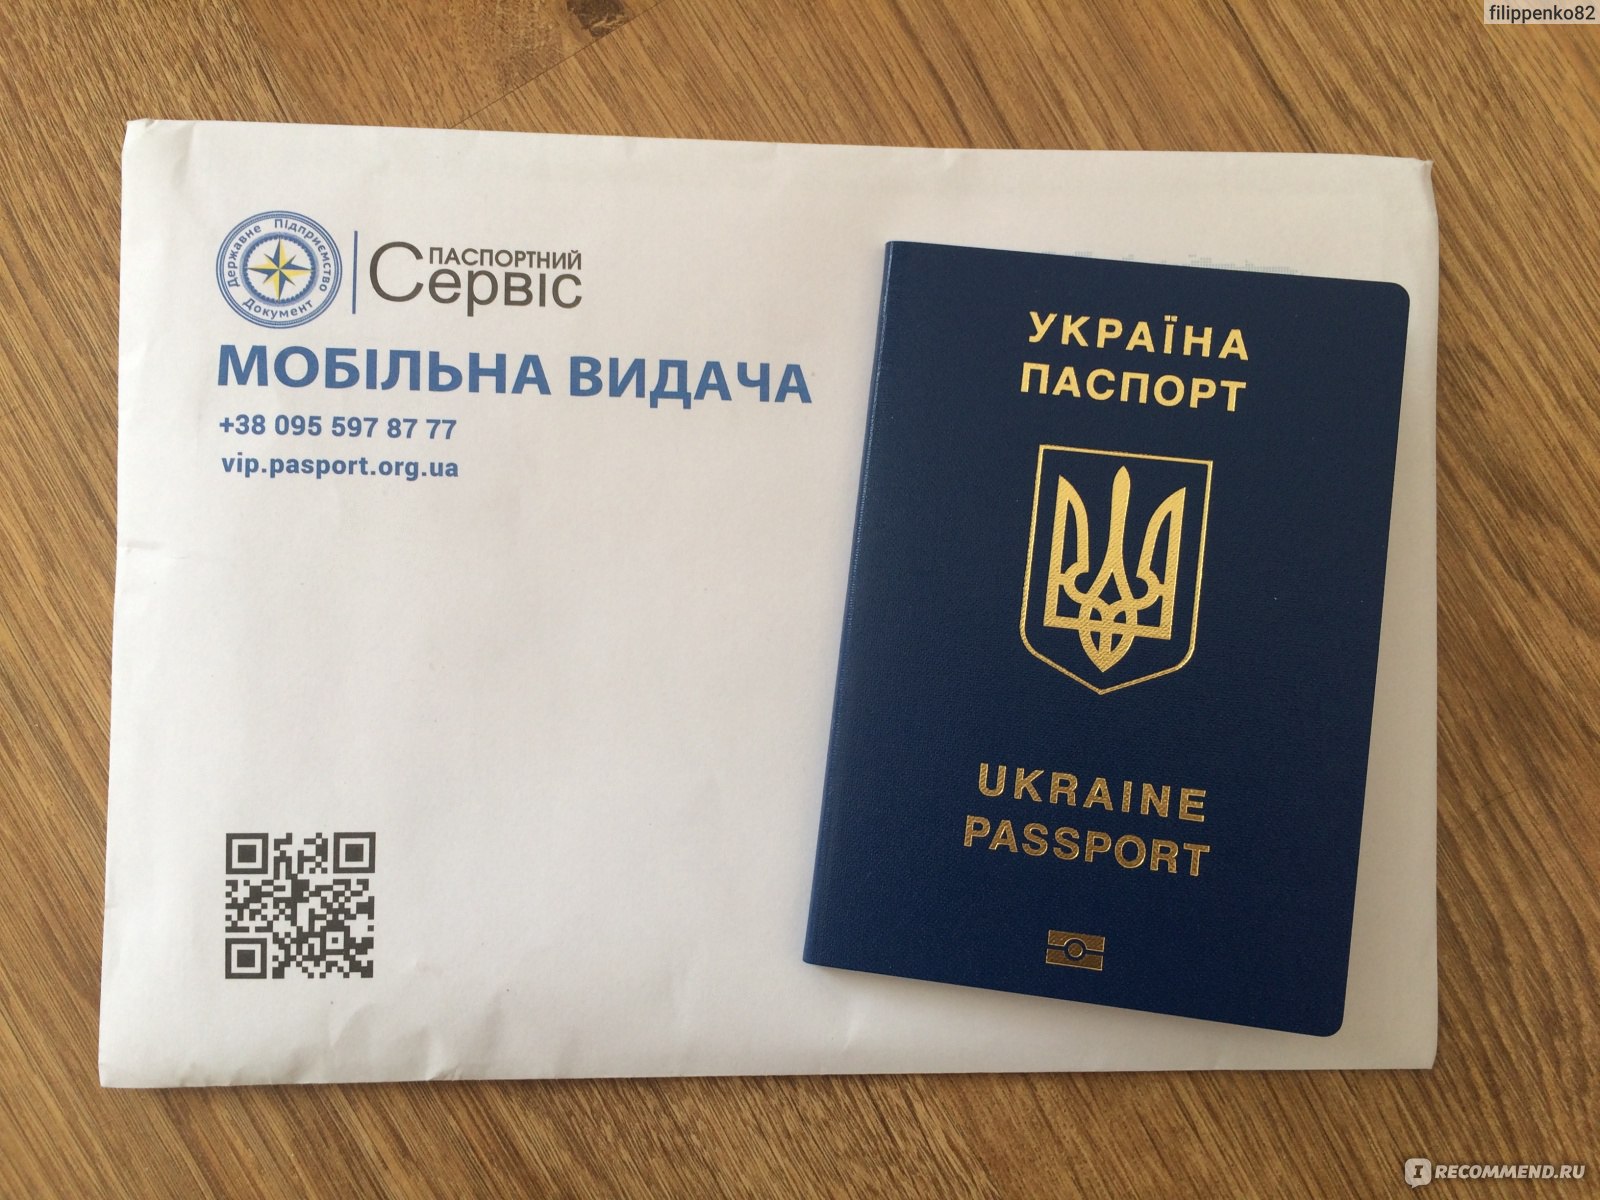 Посольство Украины загранпаспорт